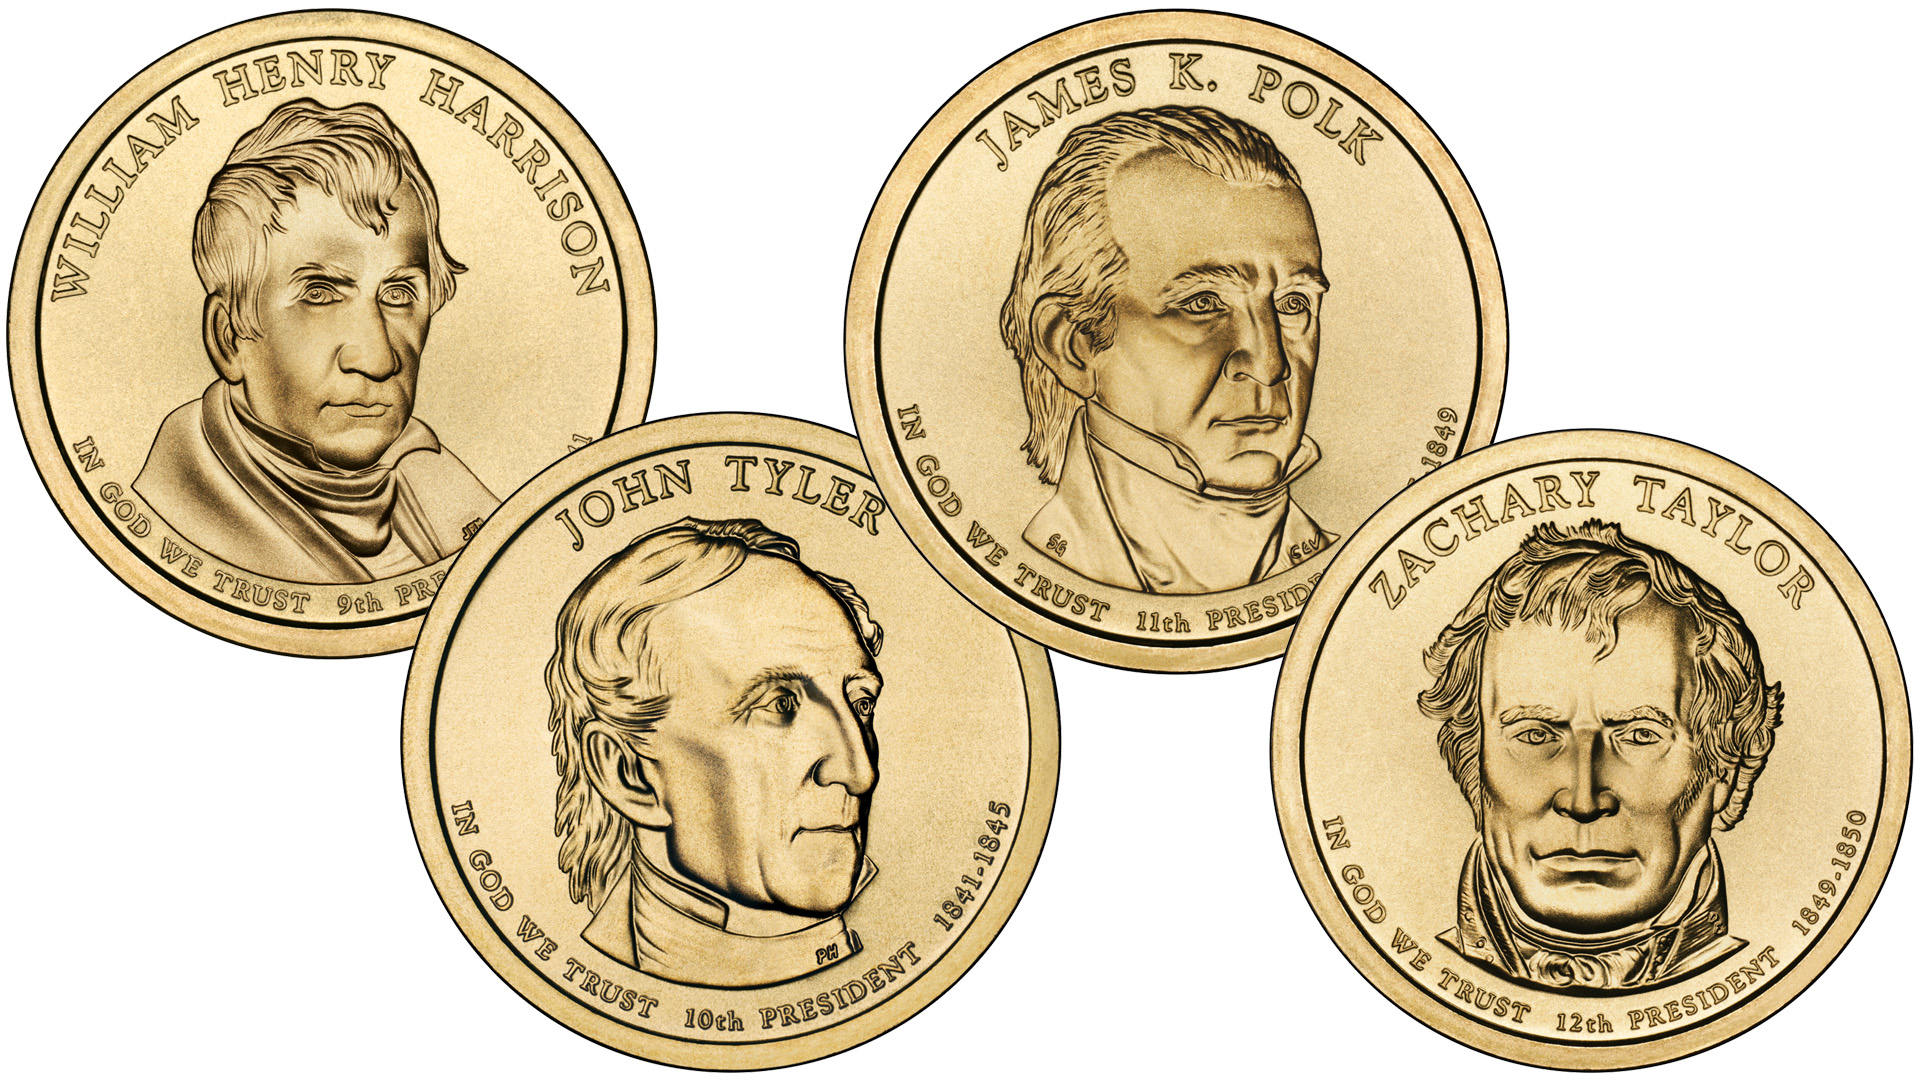 Монеты 1 доллар США из серии Президенты выпуска 2009 года.